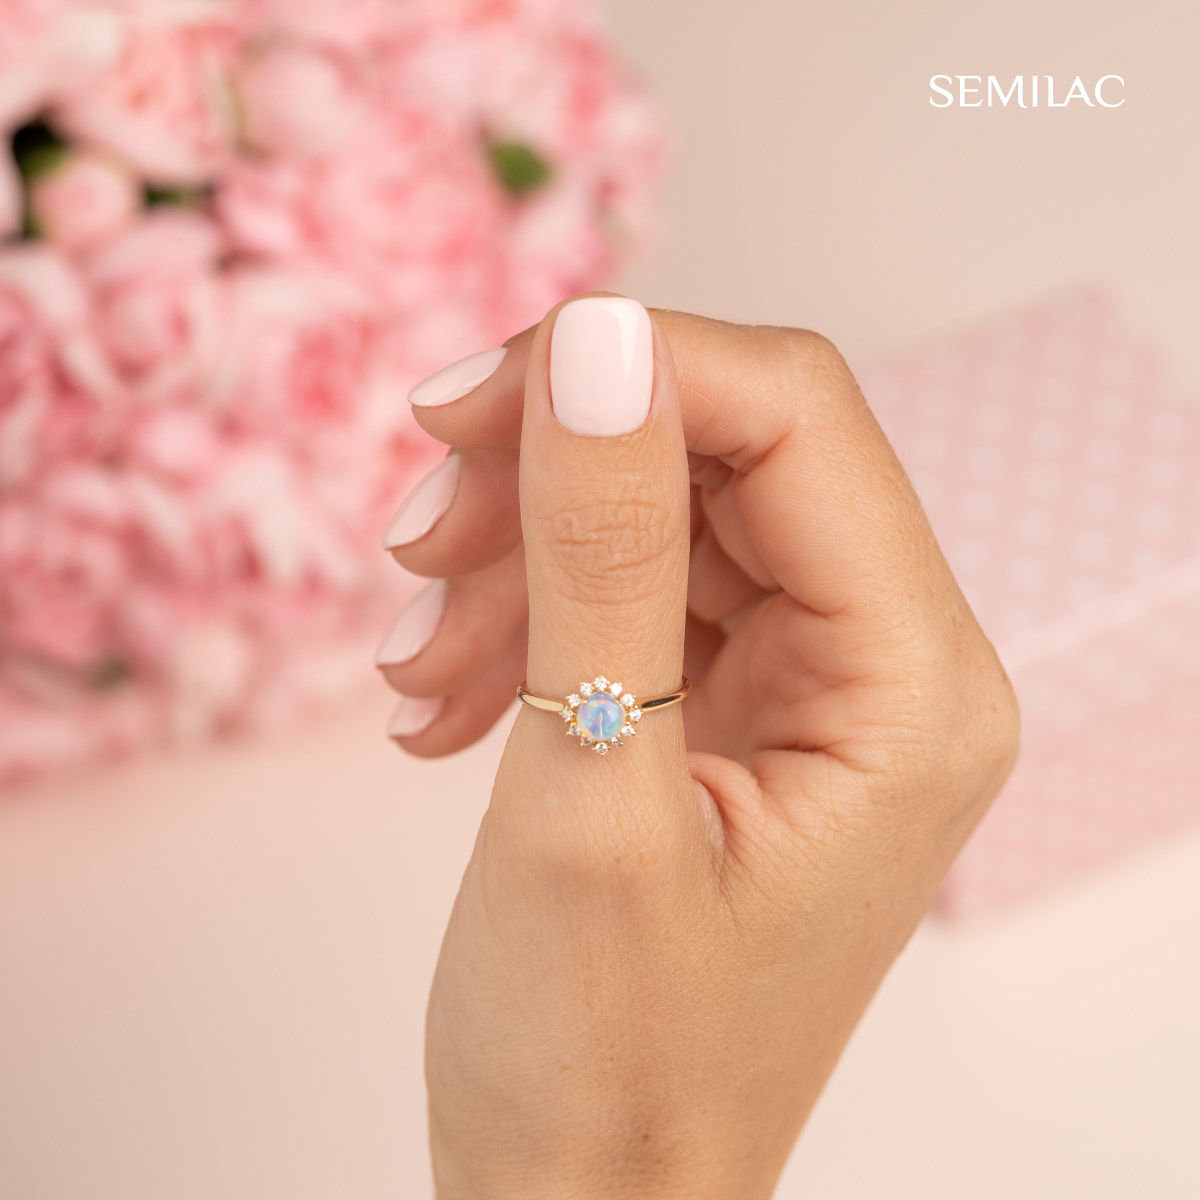 Semilac 574 Bride In Powder Pink UV Gel Polish 7ml - Semilac Shop